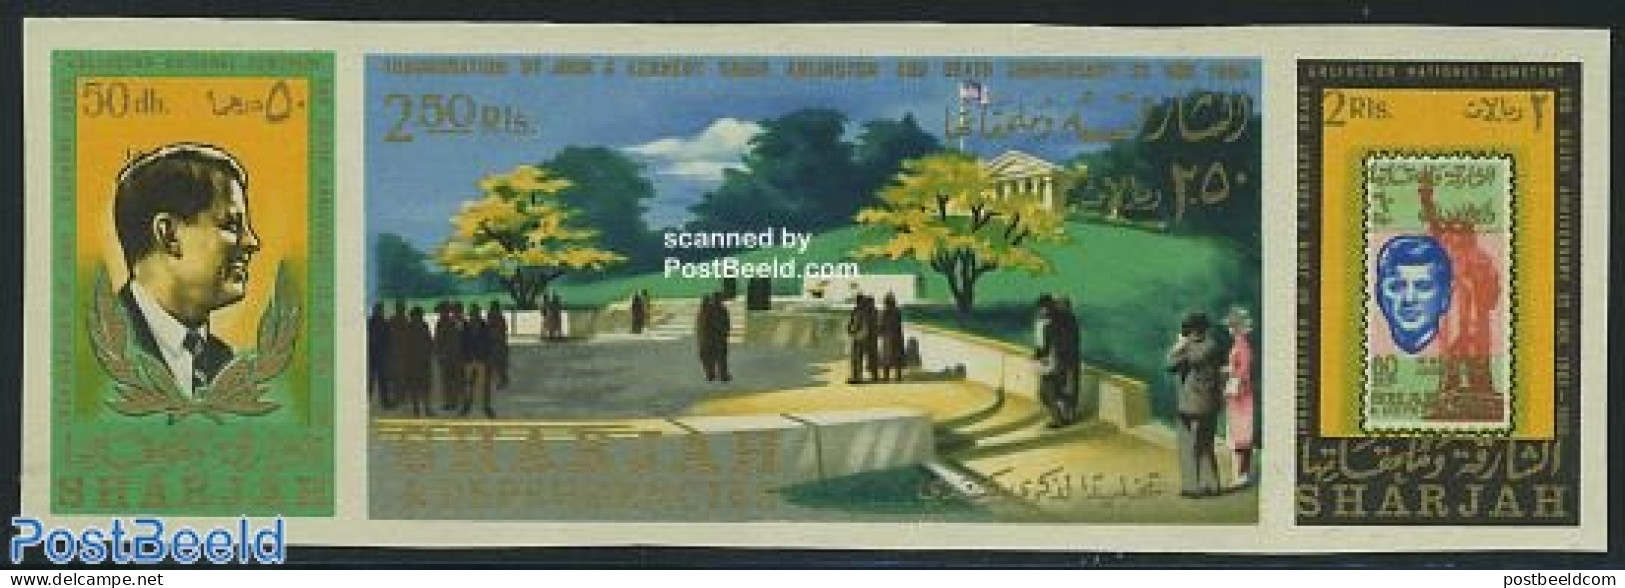 Sharjah 1966 J.F. Kennedy 3v Imperforated [::], Mint NH, History - American Presidents - Stamps On Stamps - Postzegels Op Postzegels